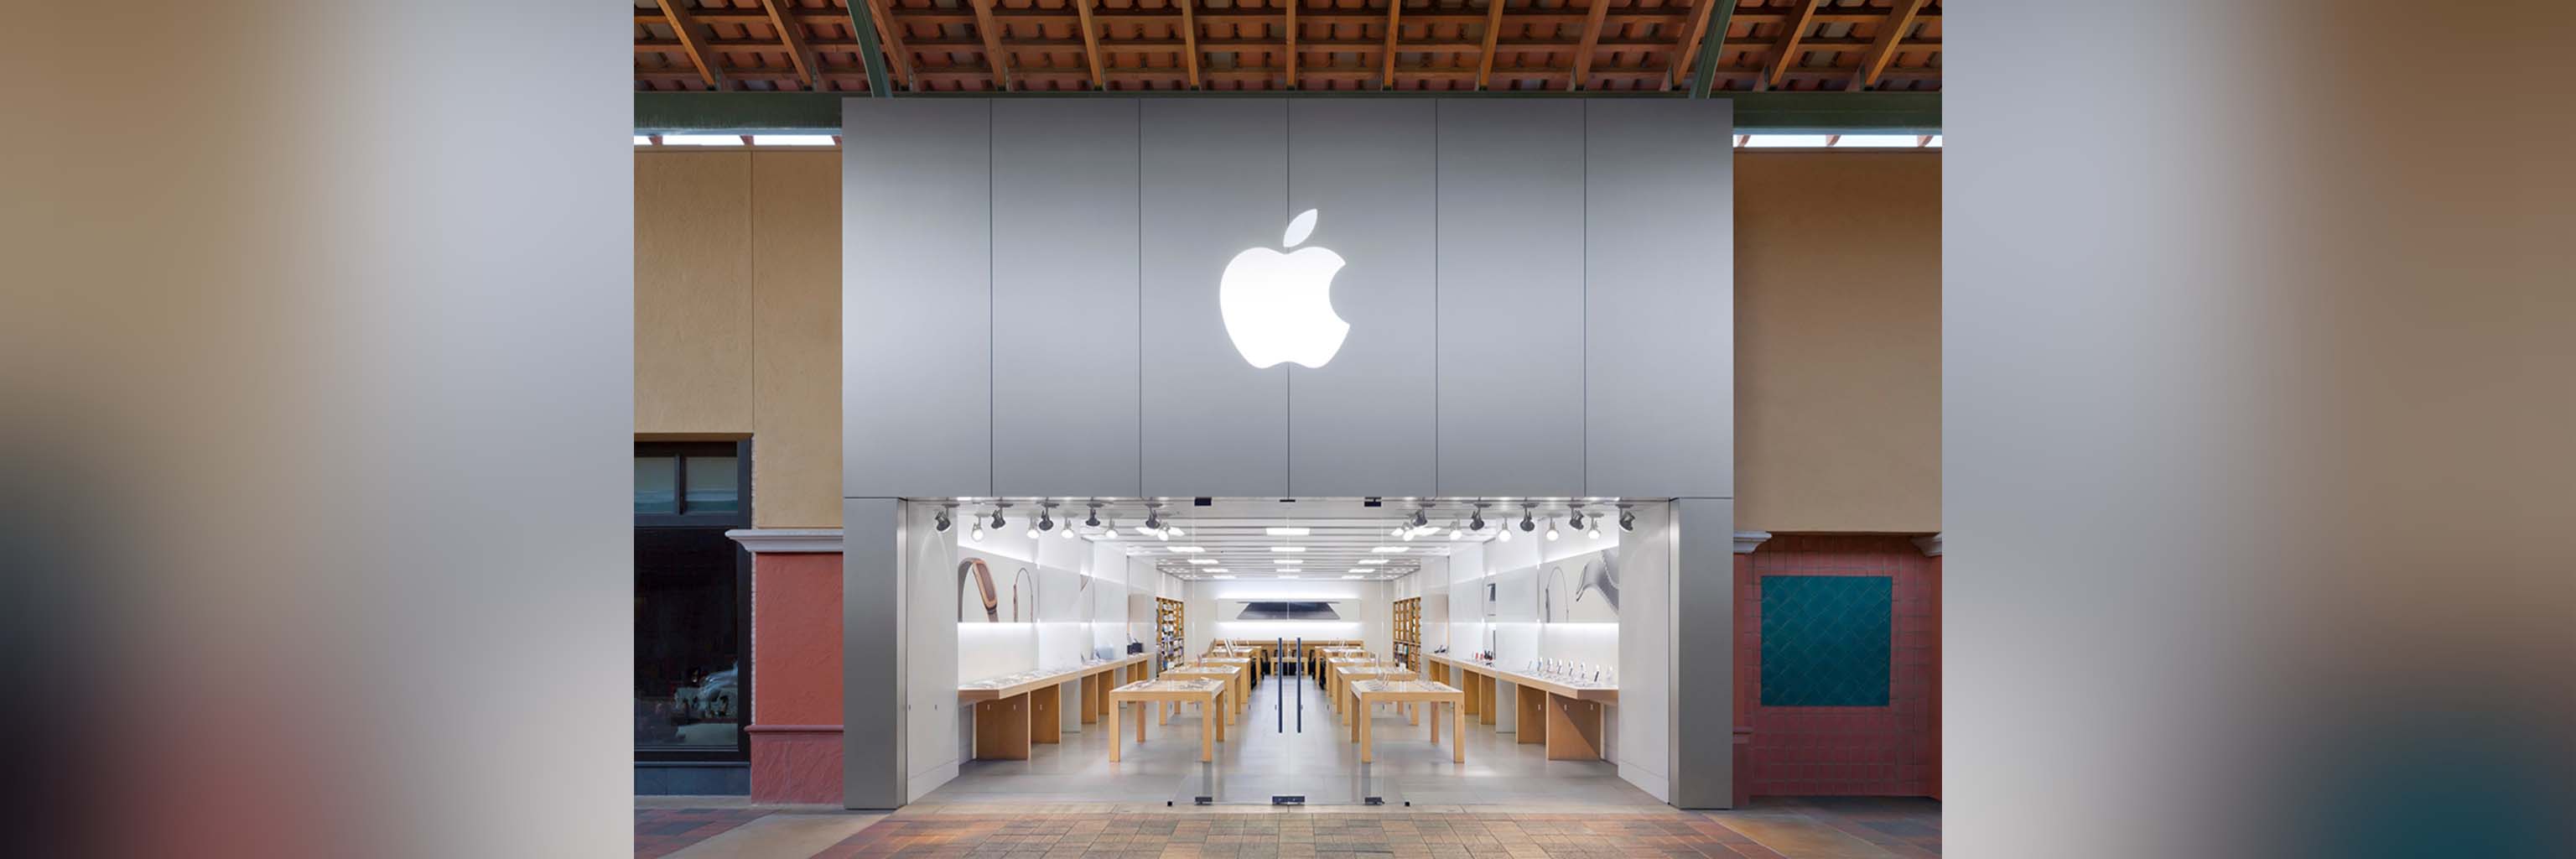 apple store reno reopening